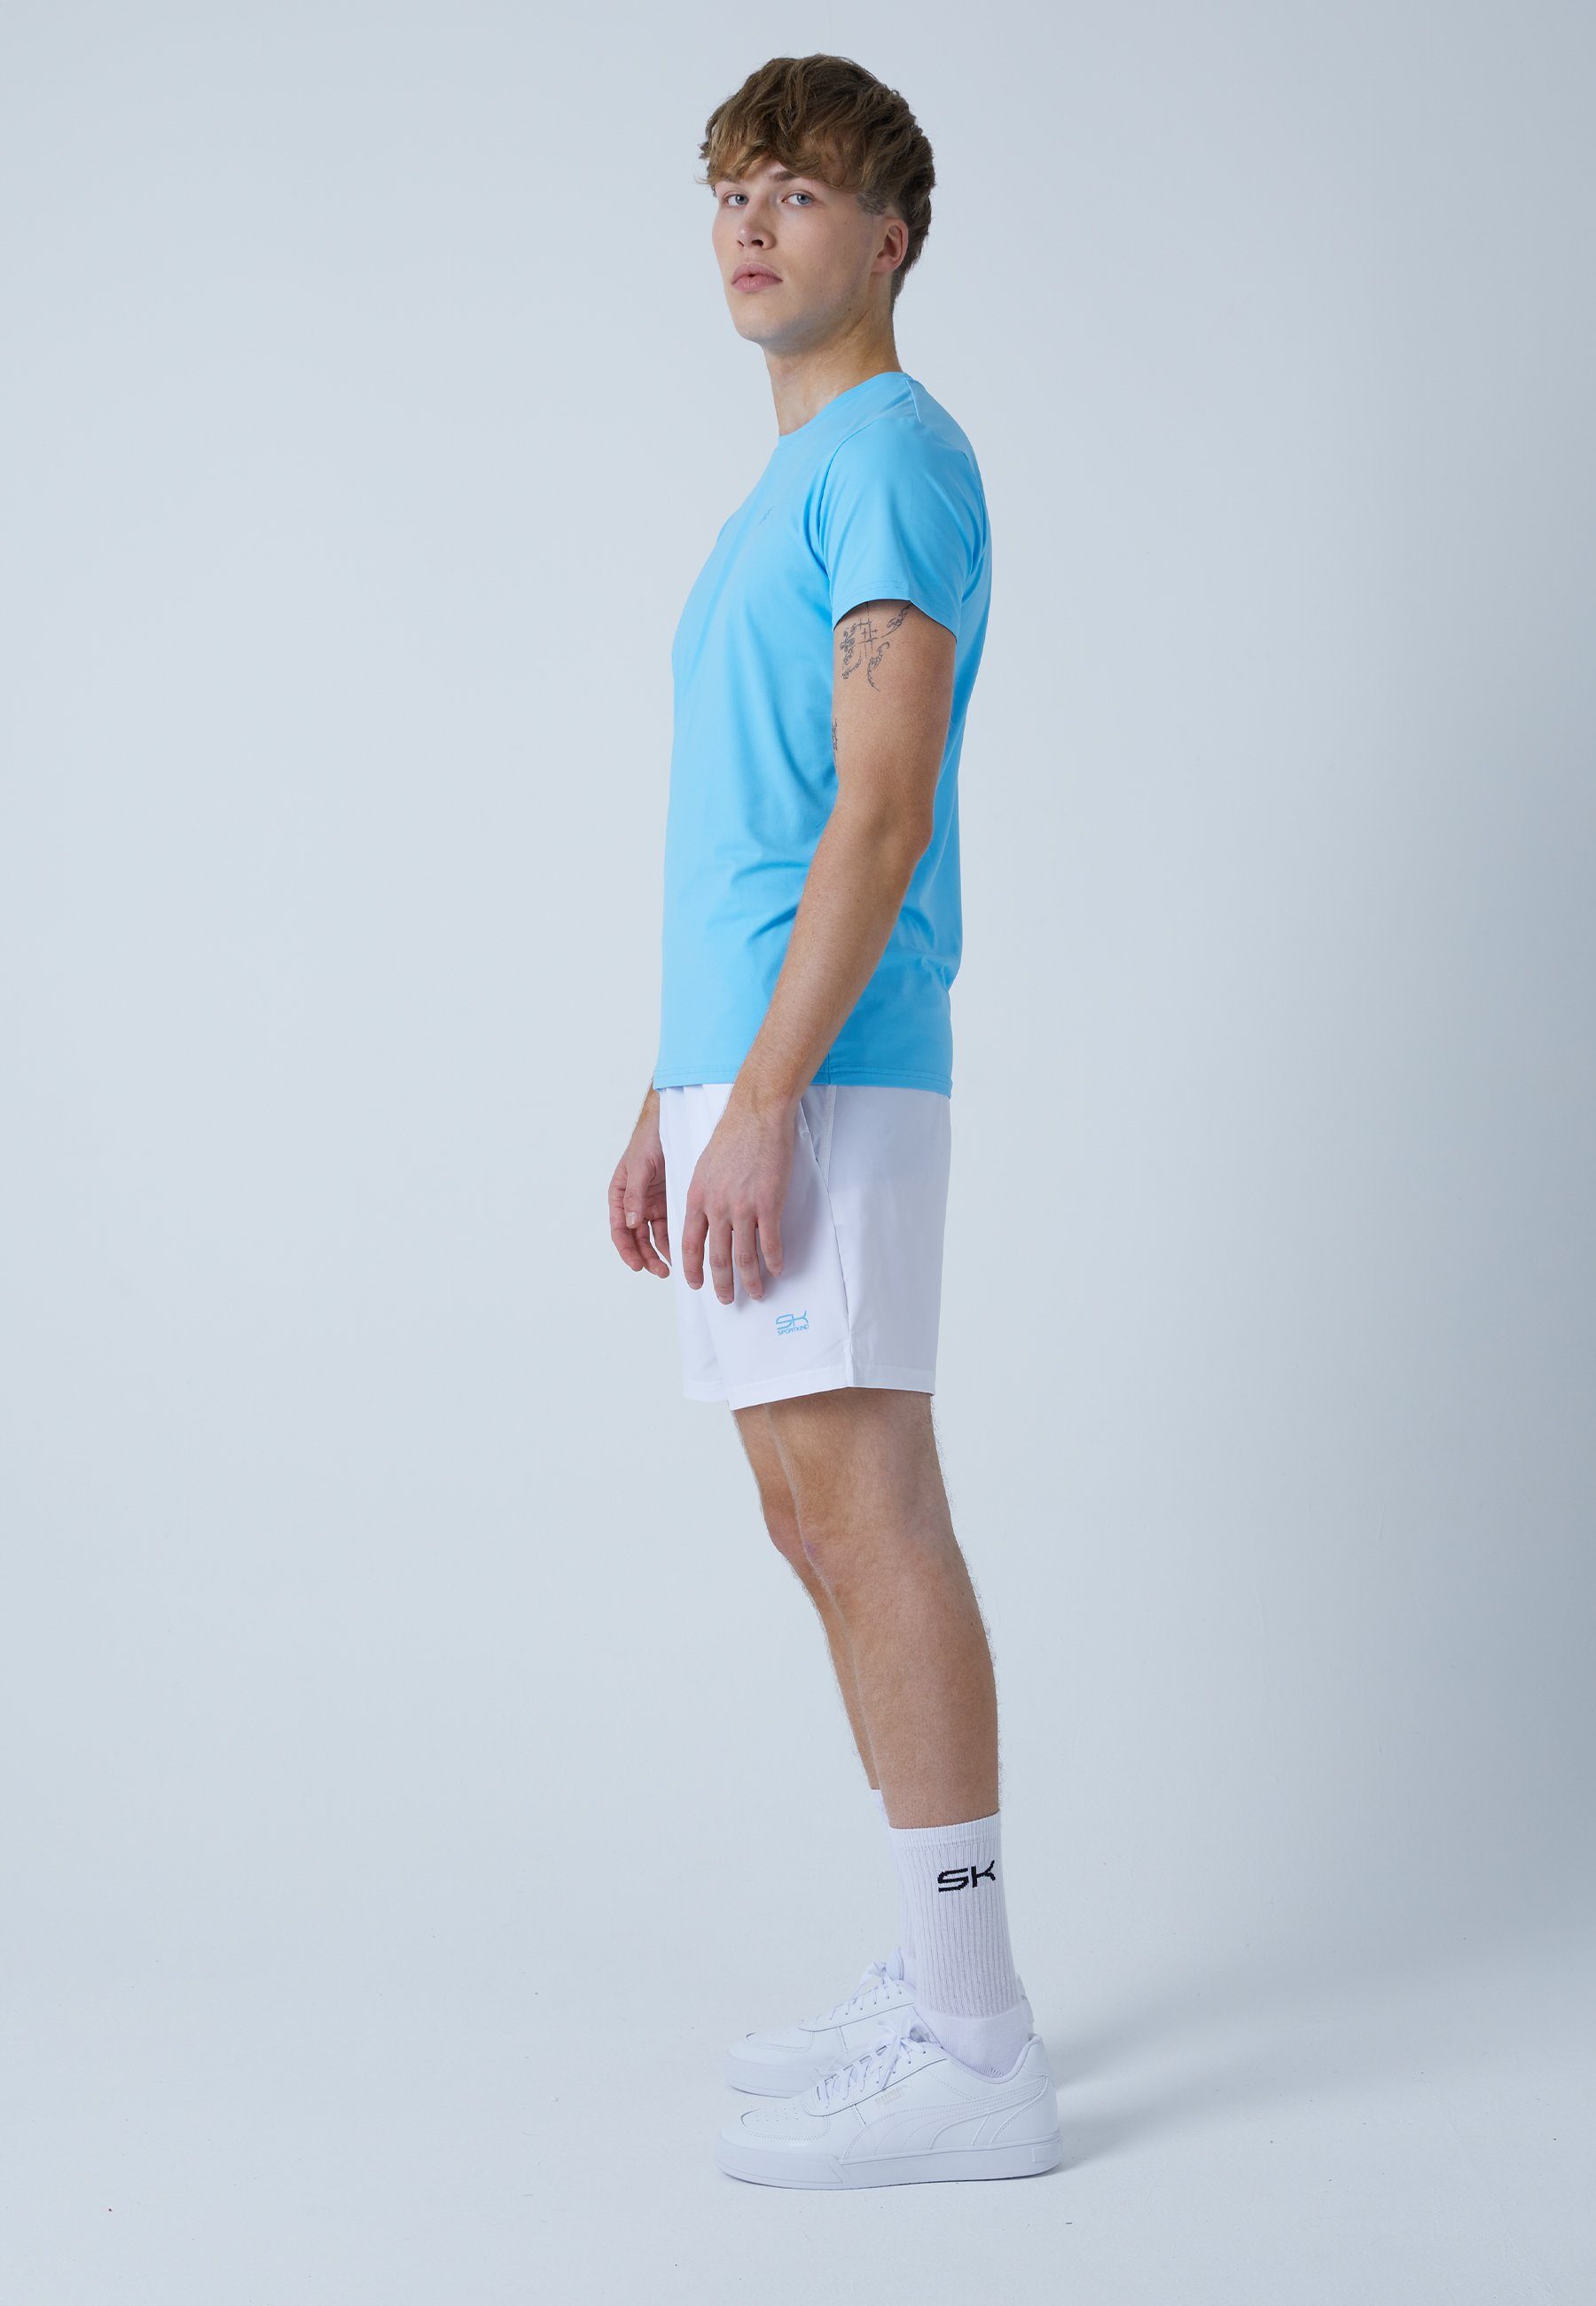 Tennis Funktionsshirt T-Shirt hellblau & Herren SPORTKIND Jungen Rundhals